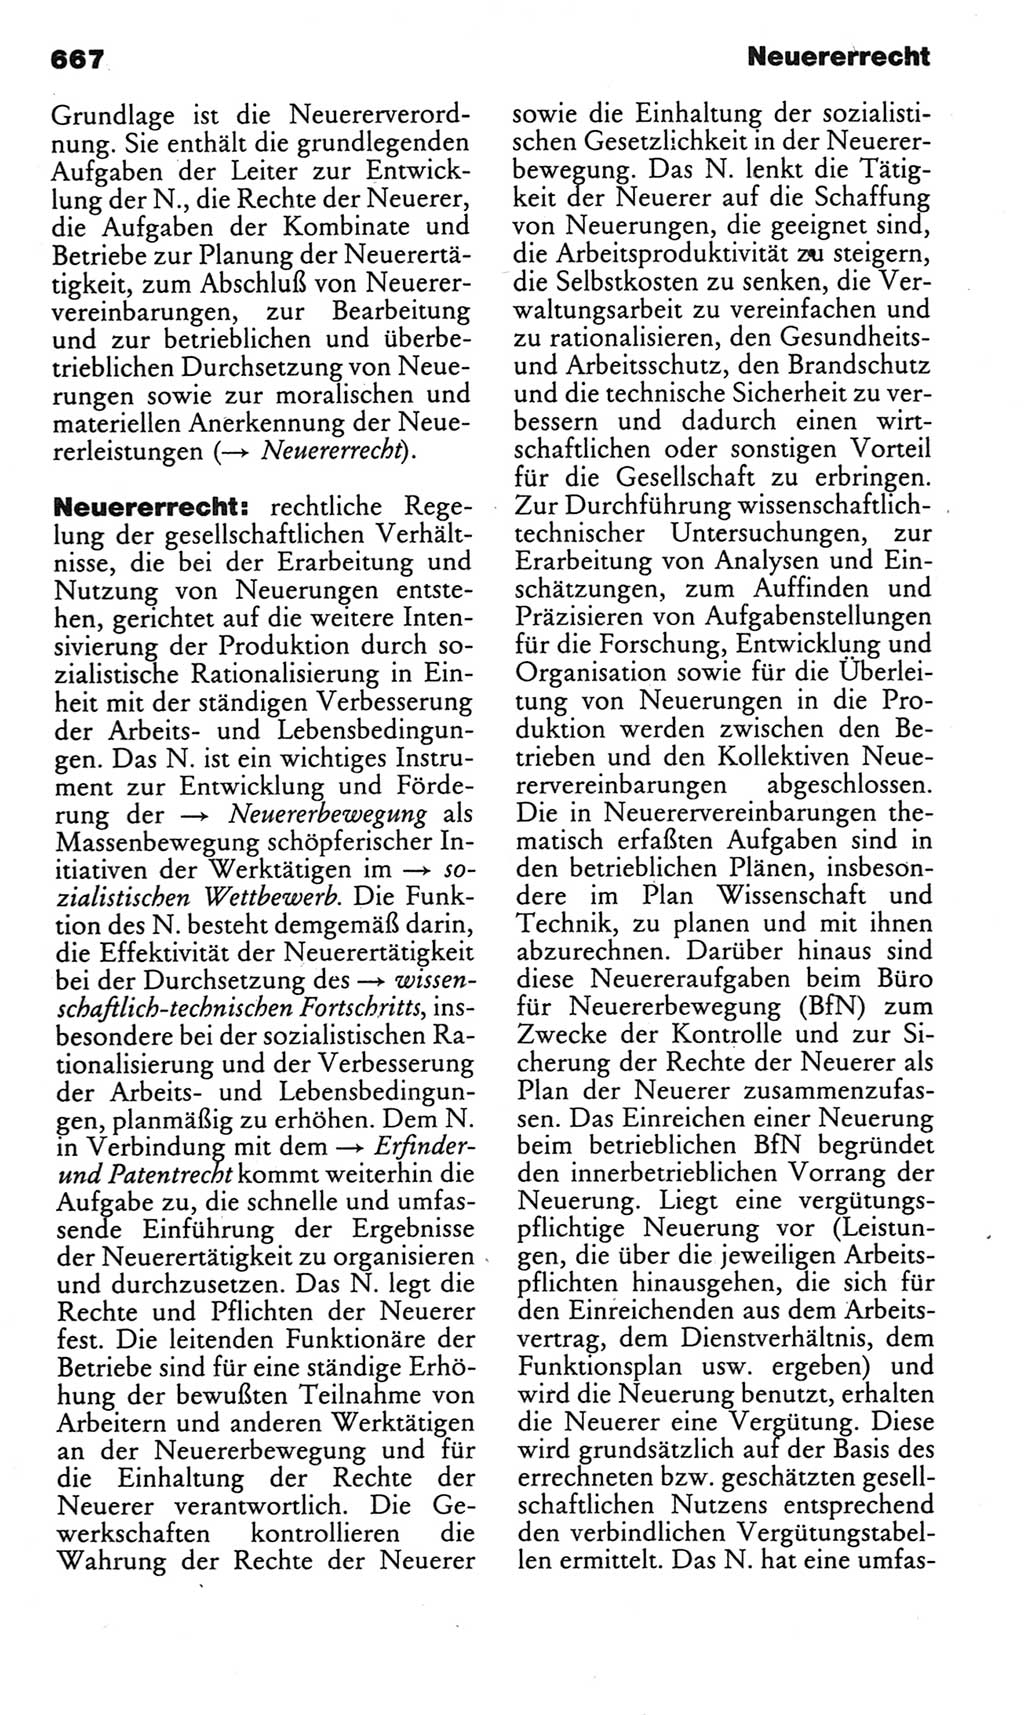 Kleines politisches Wörterbuch [Deutsche Demokratische Republik (DDR)] 1983, Seite 667 (Kl. pol. Wb. DDR 1983, S. 667)